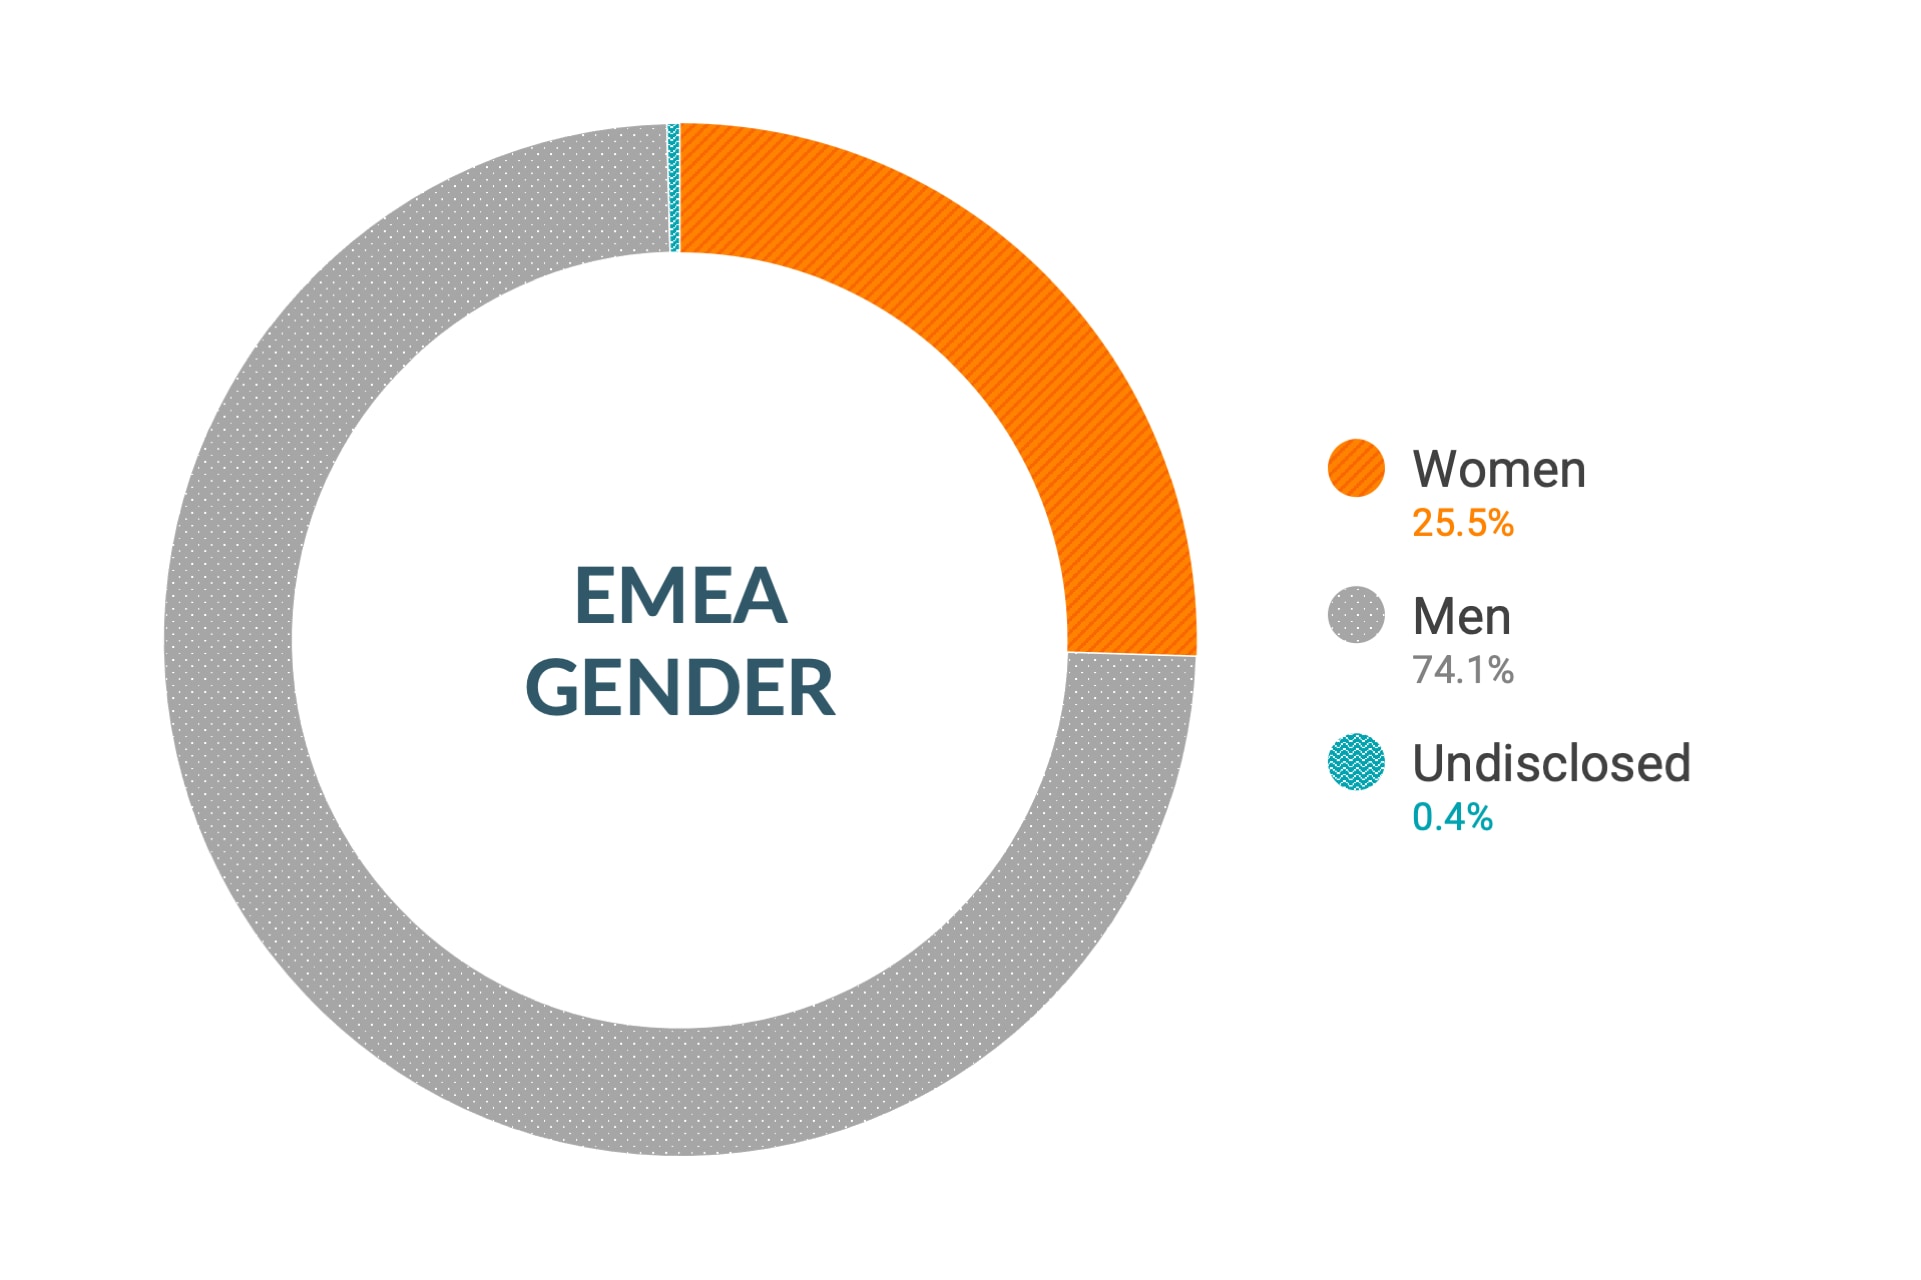 Cloudera のダイバーシティとインクルージョンデータ (欧州、中東、アフリカの性別比): 女性25.2%、男性74.3%、回答なし0.5%